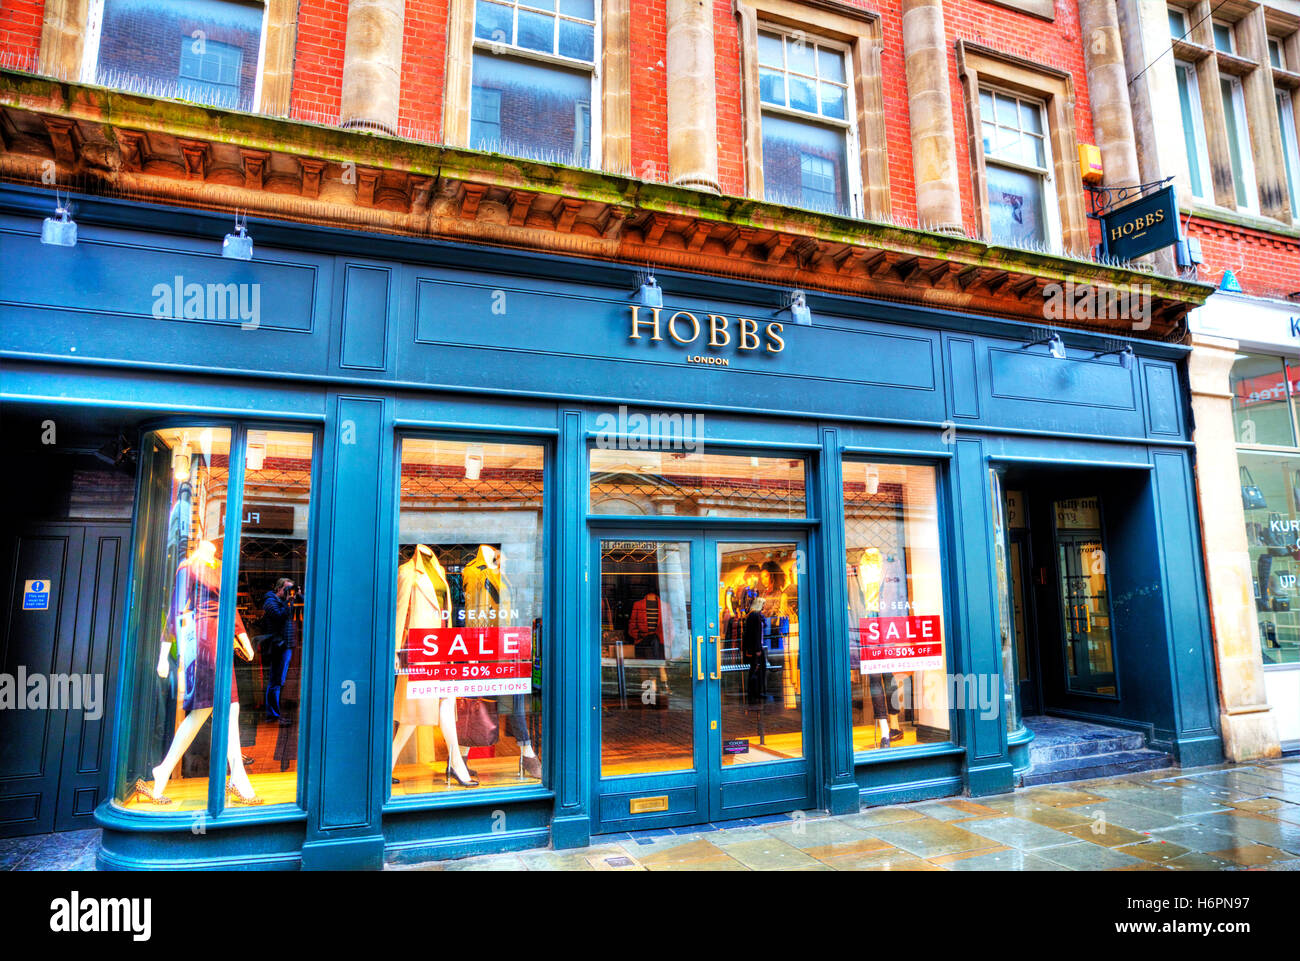 Hobbs fashion London clothes shop ...